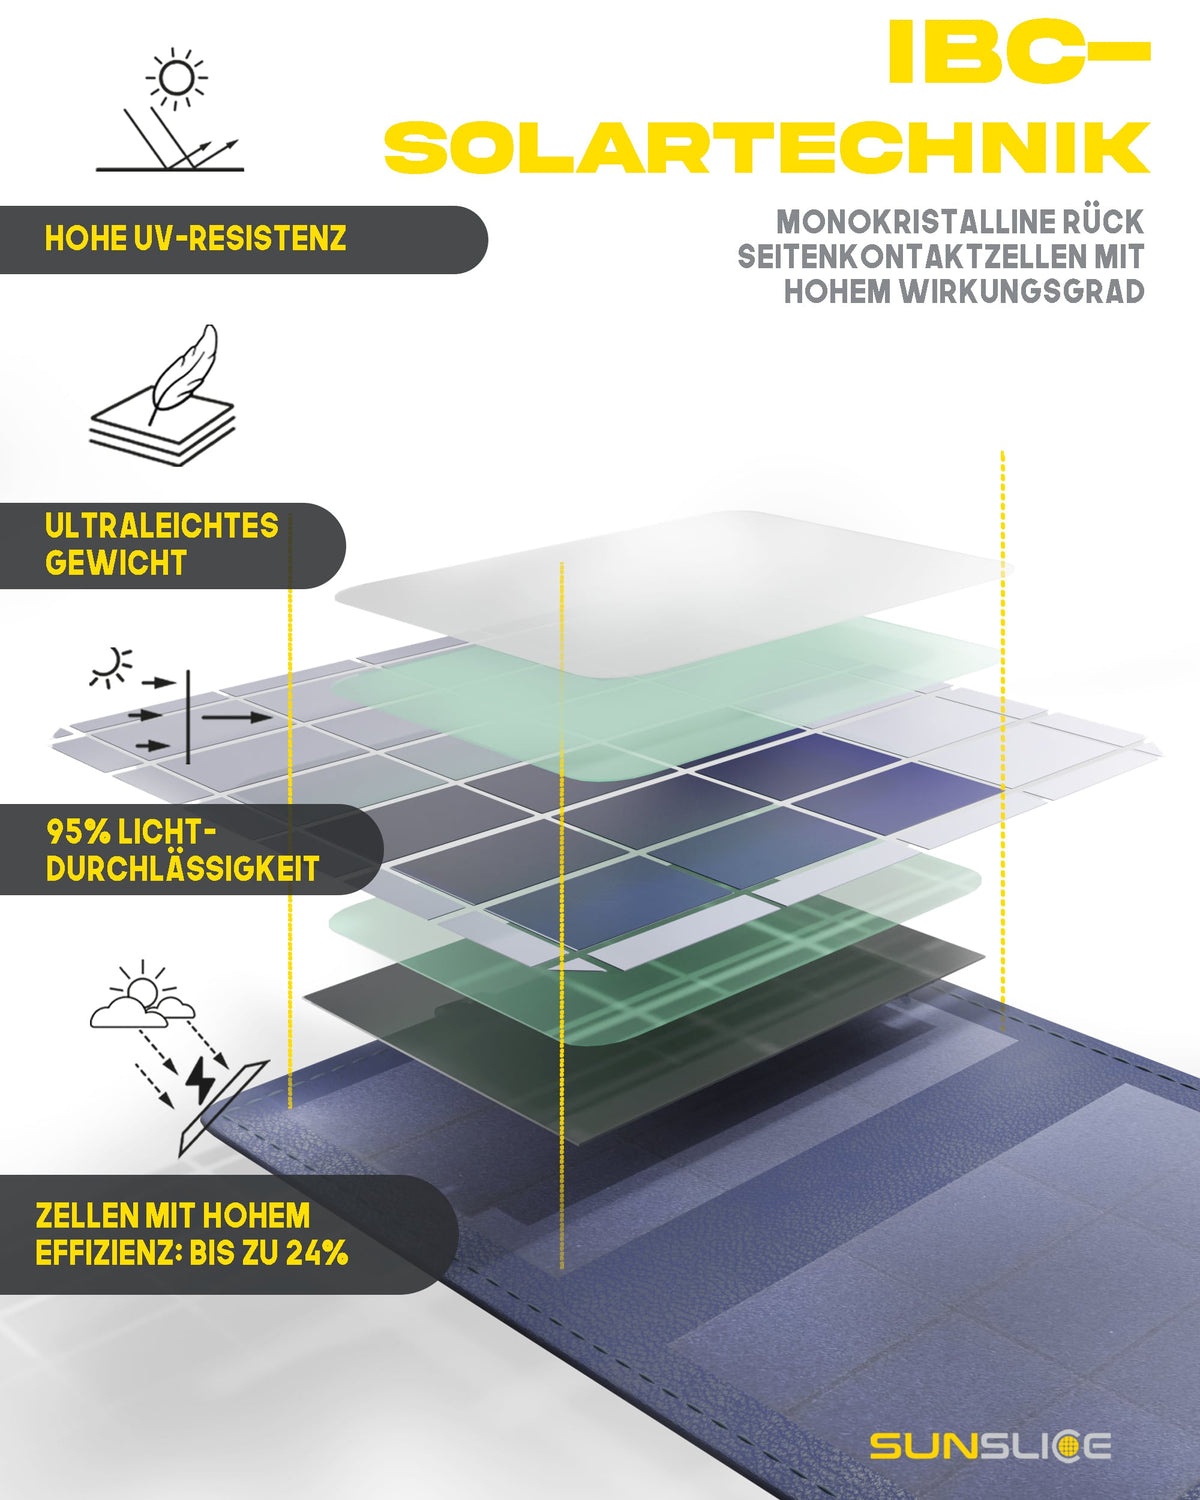 die besten hocheffizienten contact Solarzellen sind in unseren tragbaren solar power bank 